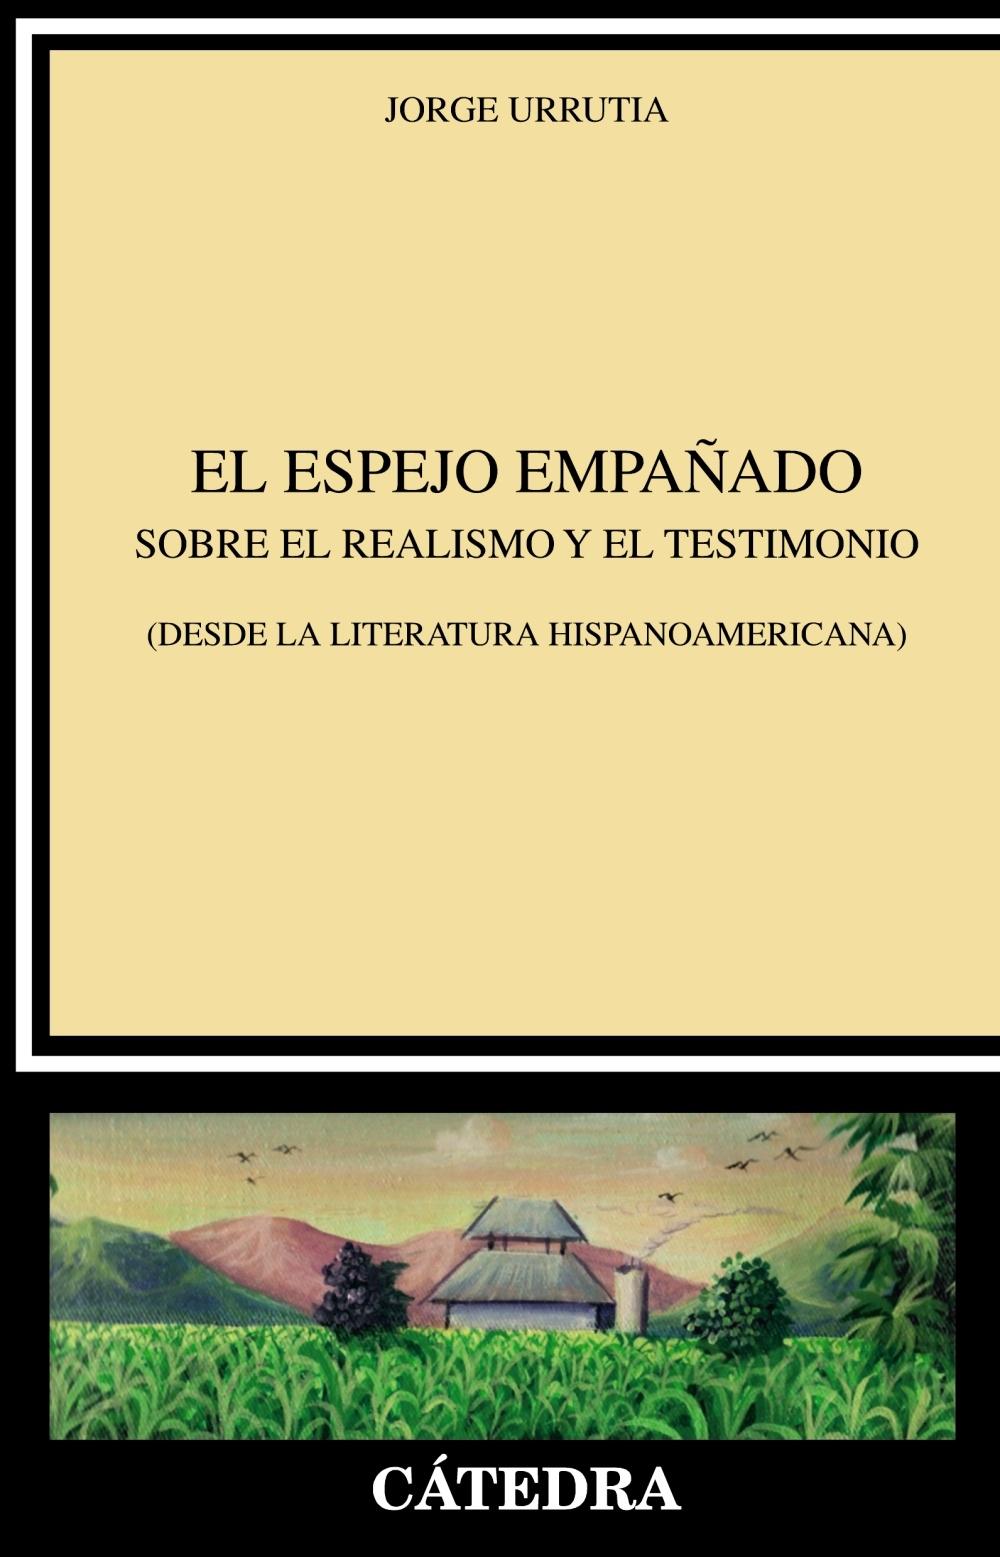 El espejo empañado "Sobre el realismo y el testimonio (desde la literatura hispanoamericana)". 